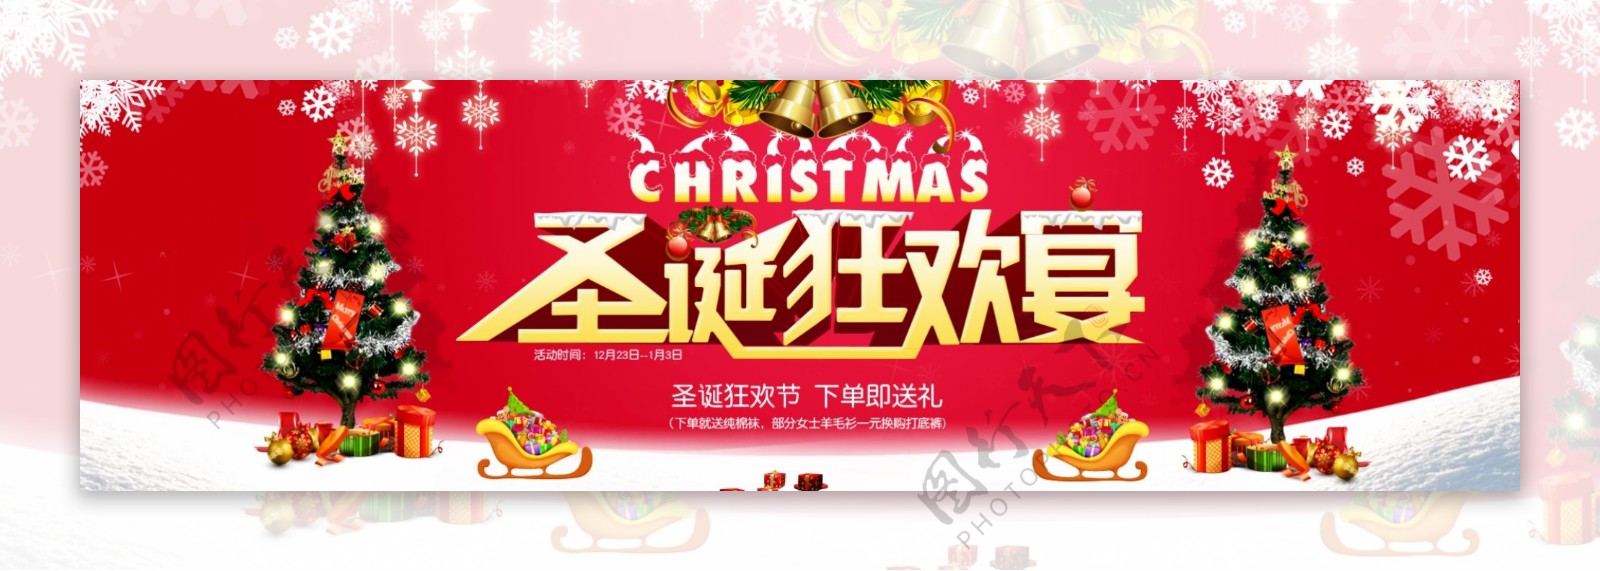 天猫京东圣诞狂欢宴海报